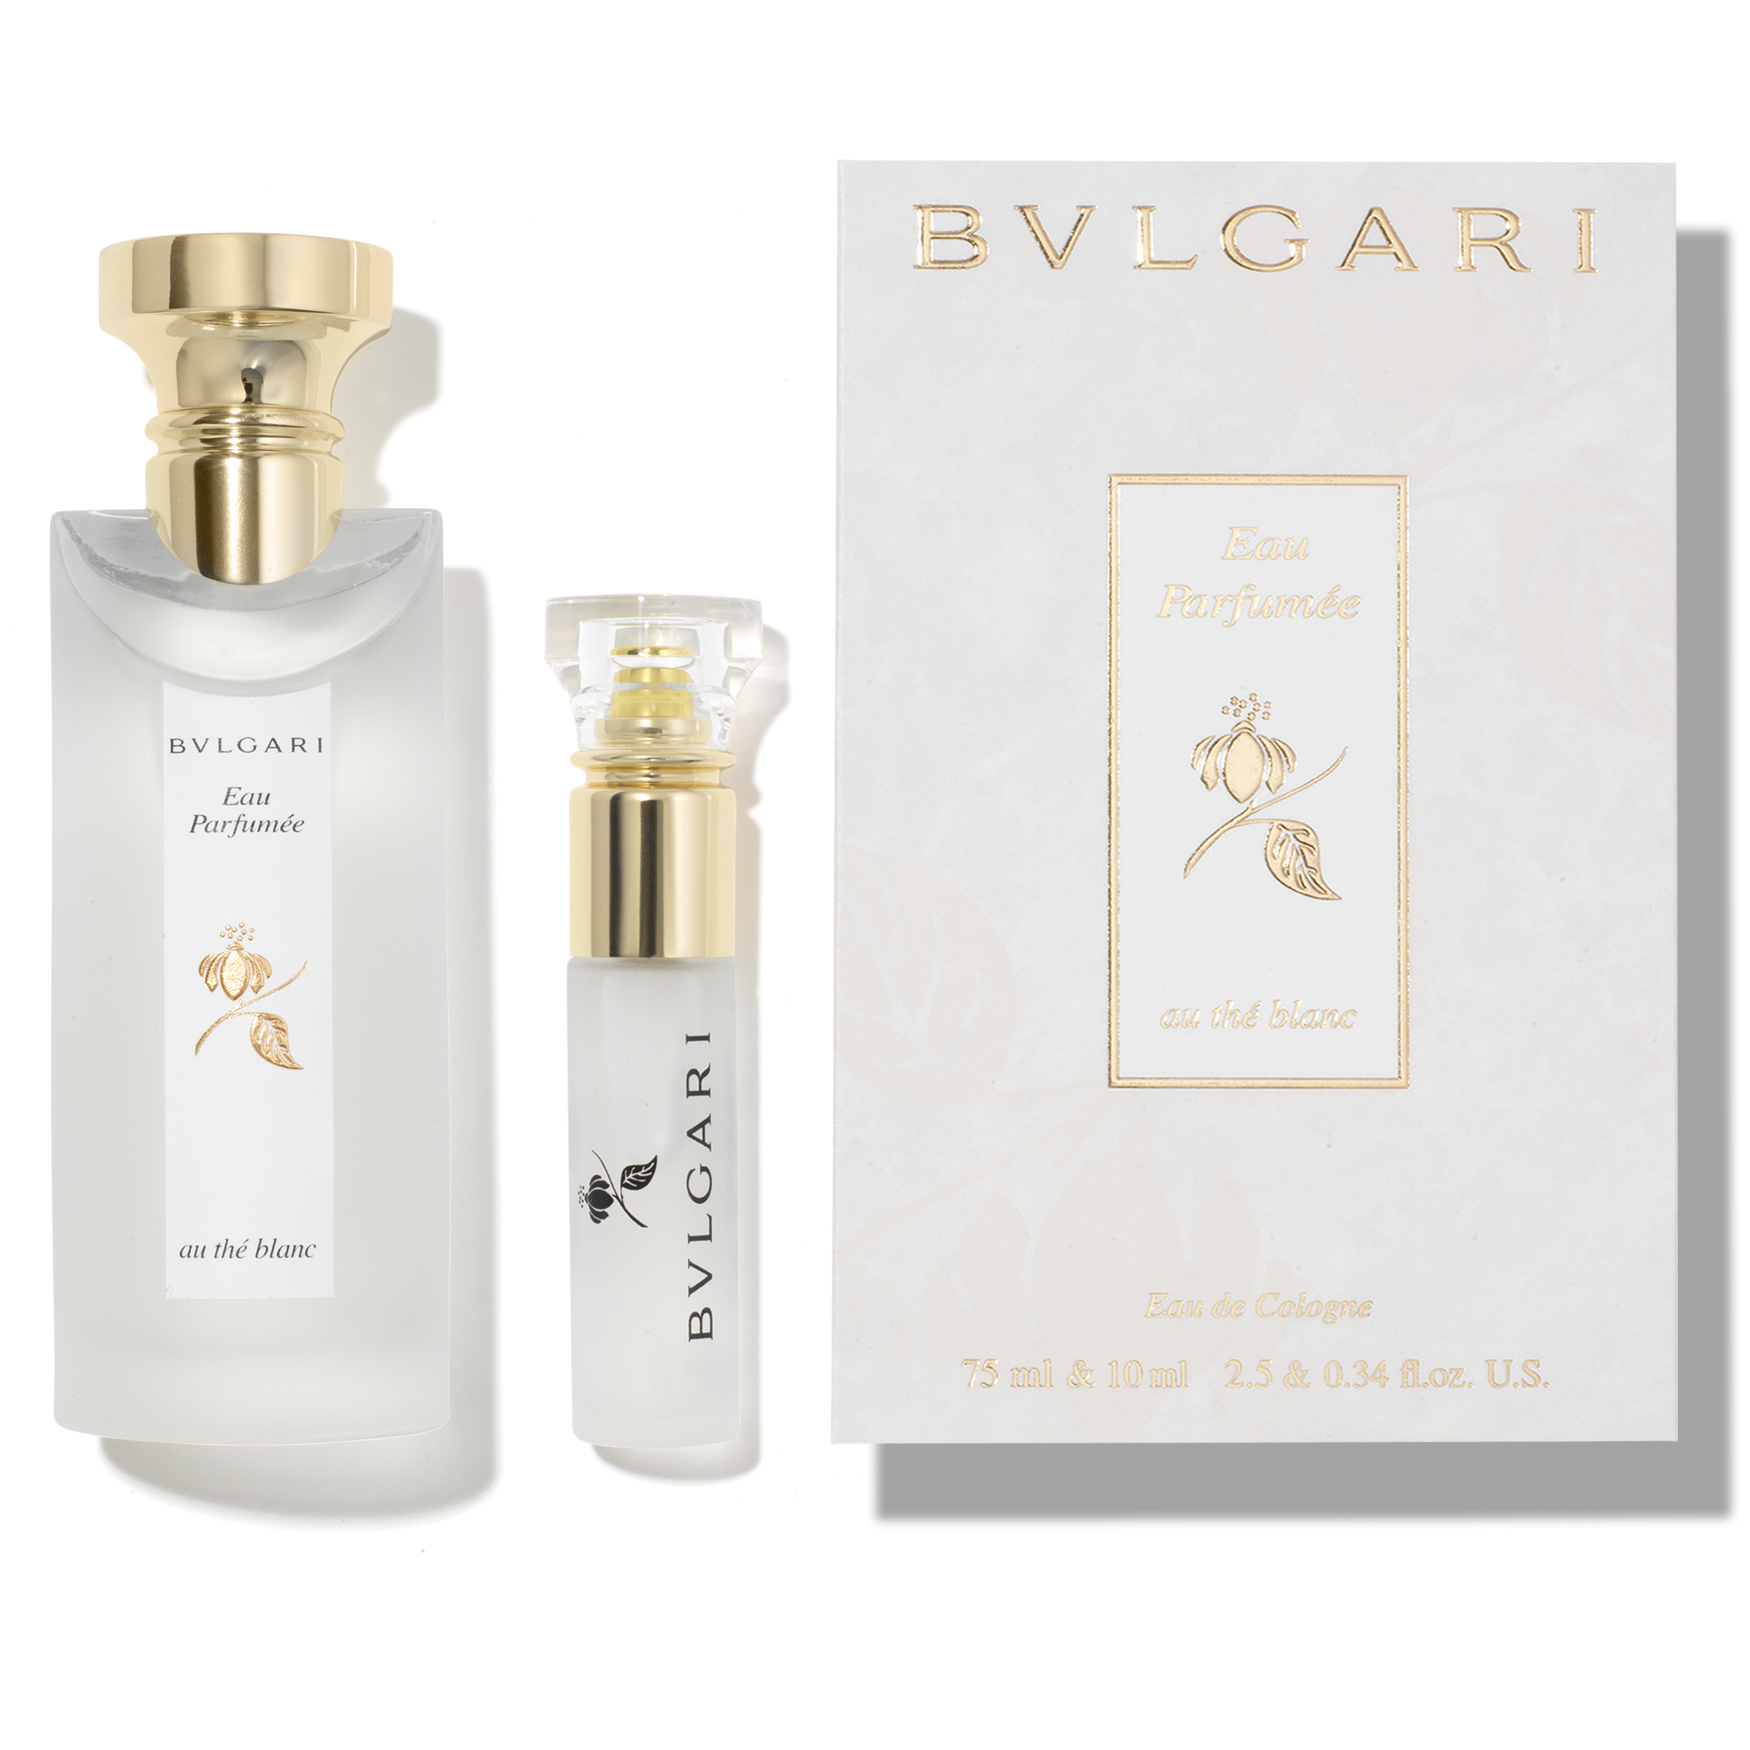  Bvlgari Eau Parfumee au the Blanc Eau de Cologne : Beauty &  Personal Care